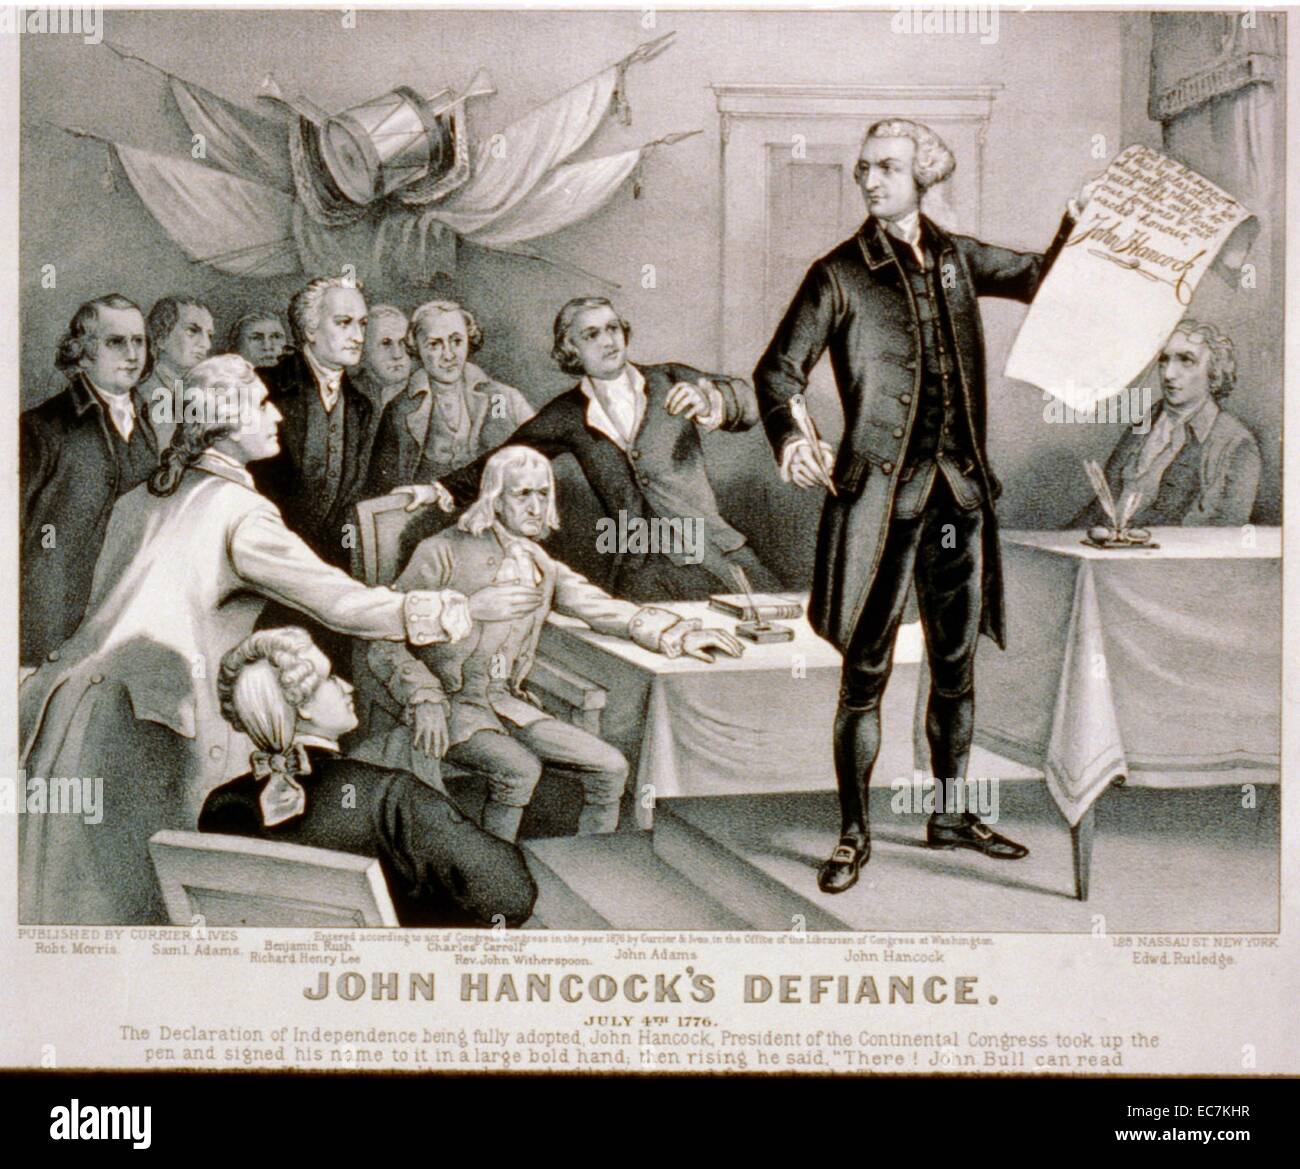 Il John Hancock's defiance il 4 luglio 1776. Ha servito come Presidente del Secondo Congresso continentale ed era il primo e il terzo governatore del Commonwealth of Massachusetts. Egli è ricordato per la sua grande ed elegante la firma sugli Stati Uniti Dichiarazione di Indipendenza. Foto Stock